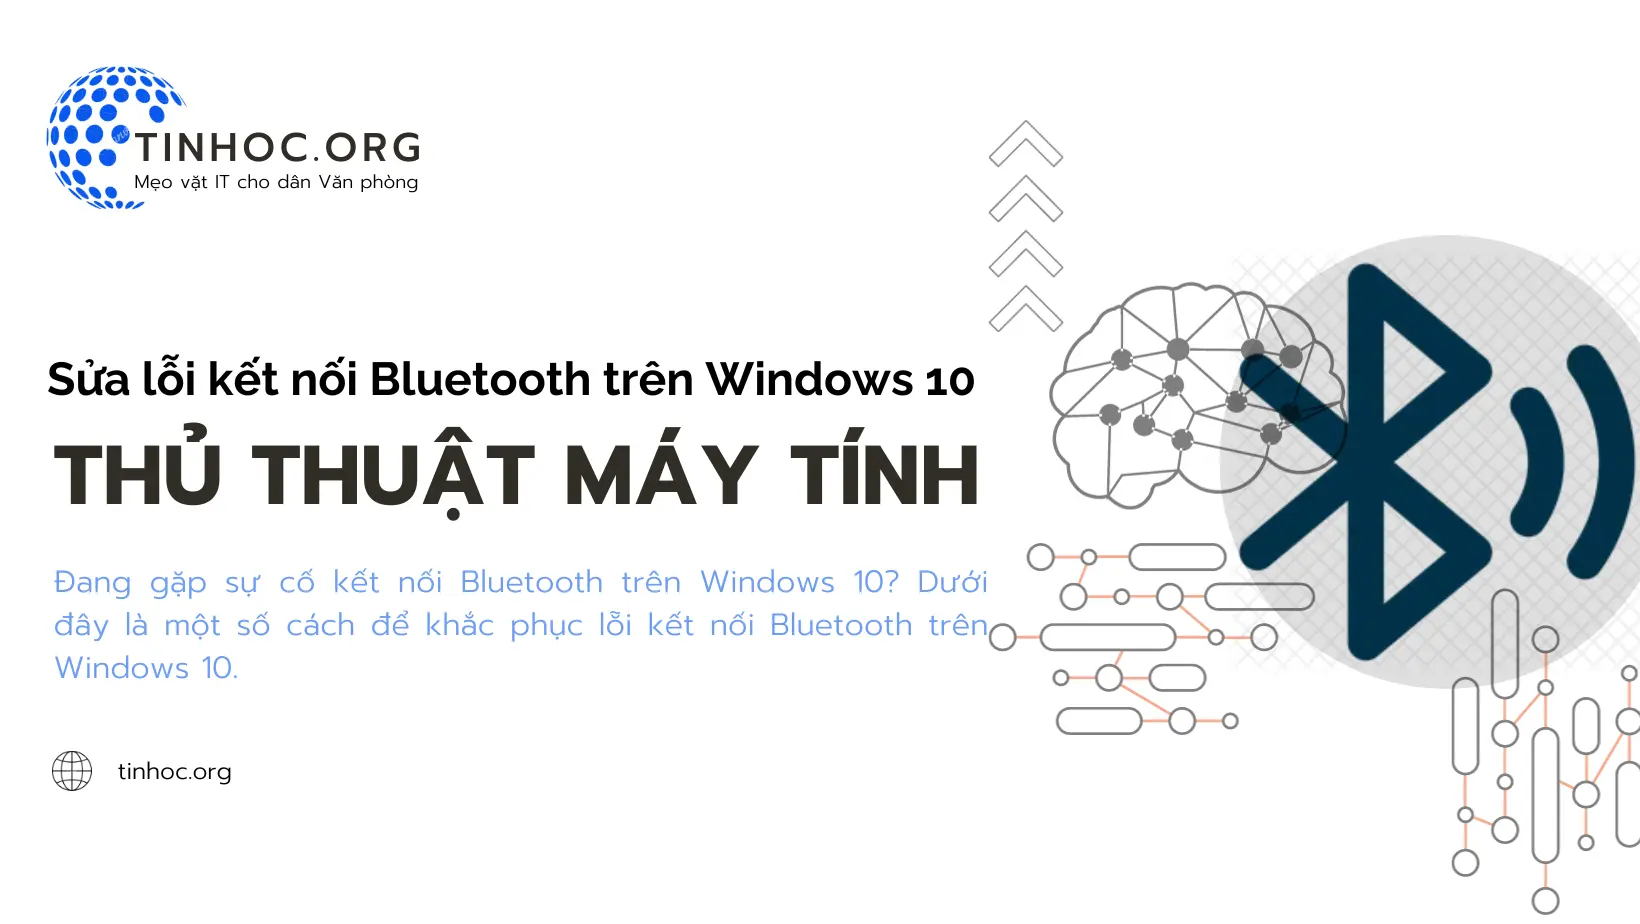 Đang gặp sự cố kết nối Bluetooth trên Windows 10? Dưới đây là một số cách để khắc phục lỗi kết nối Bluetooth trên Windows 10.